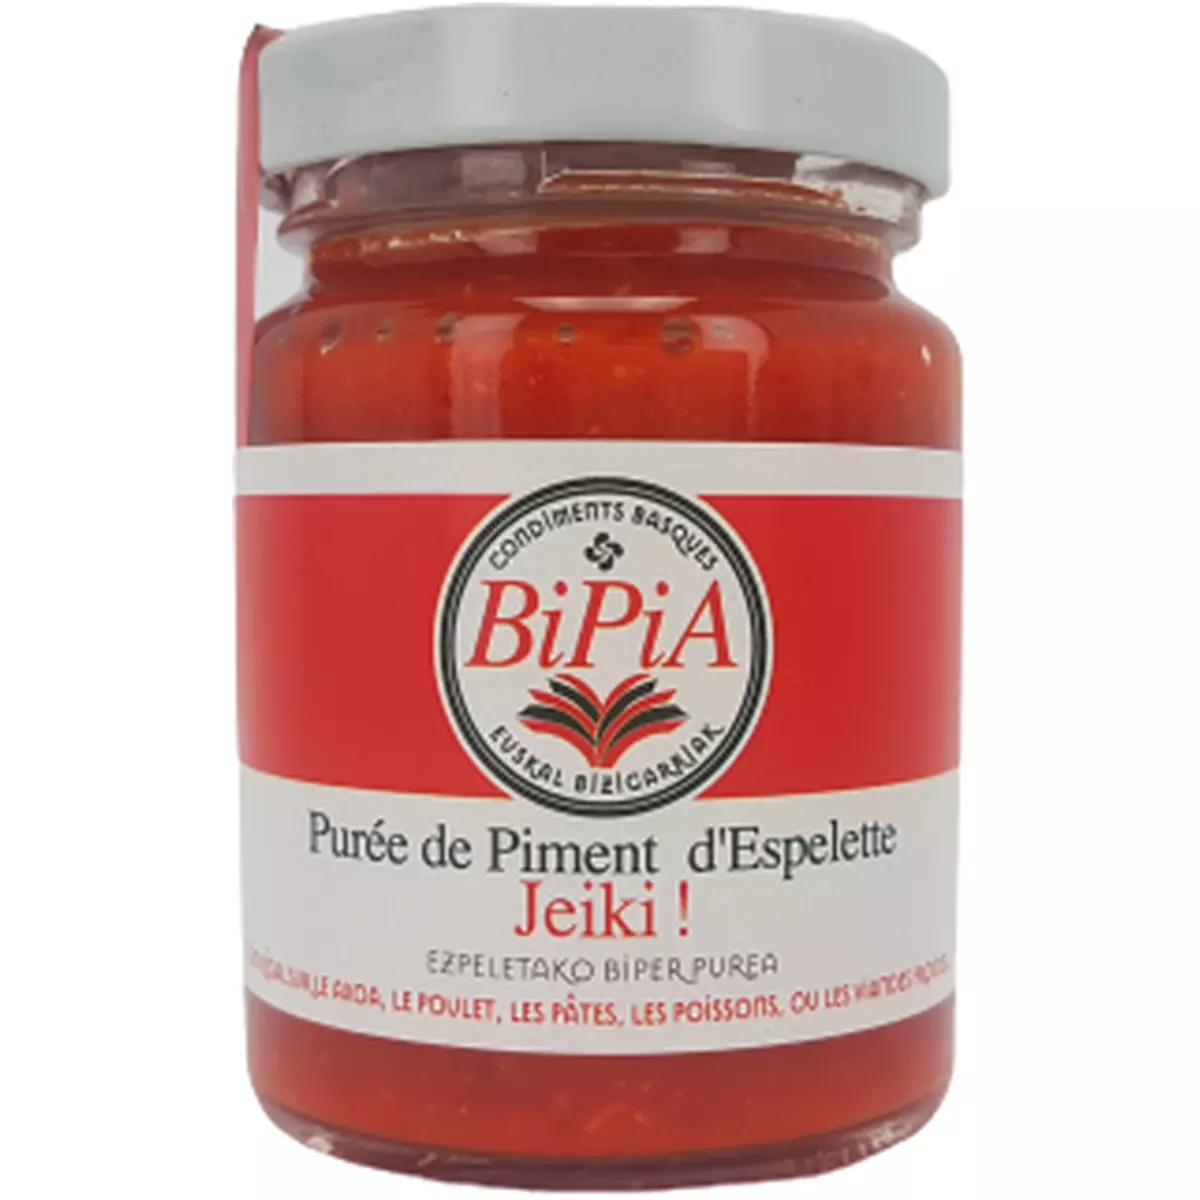 BIPIA Purée de piment d'Espelette Jeiki 90g